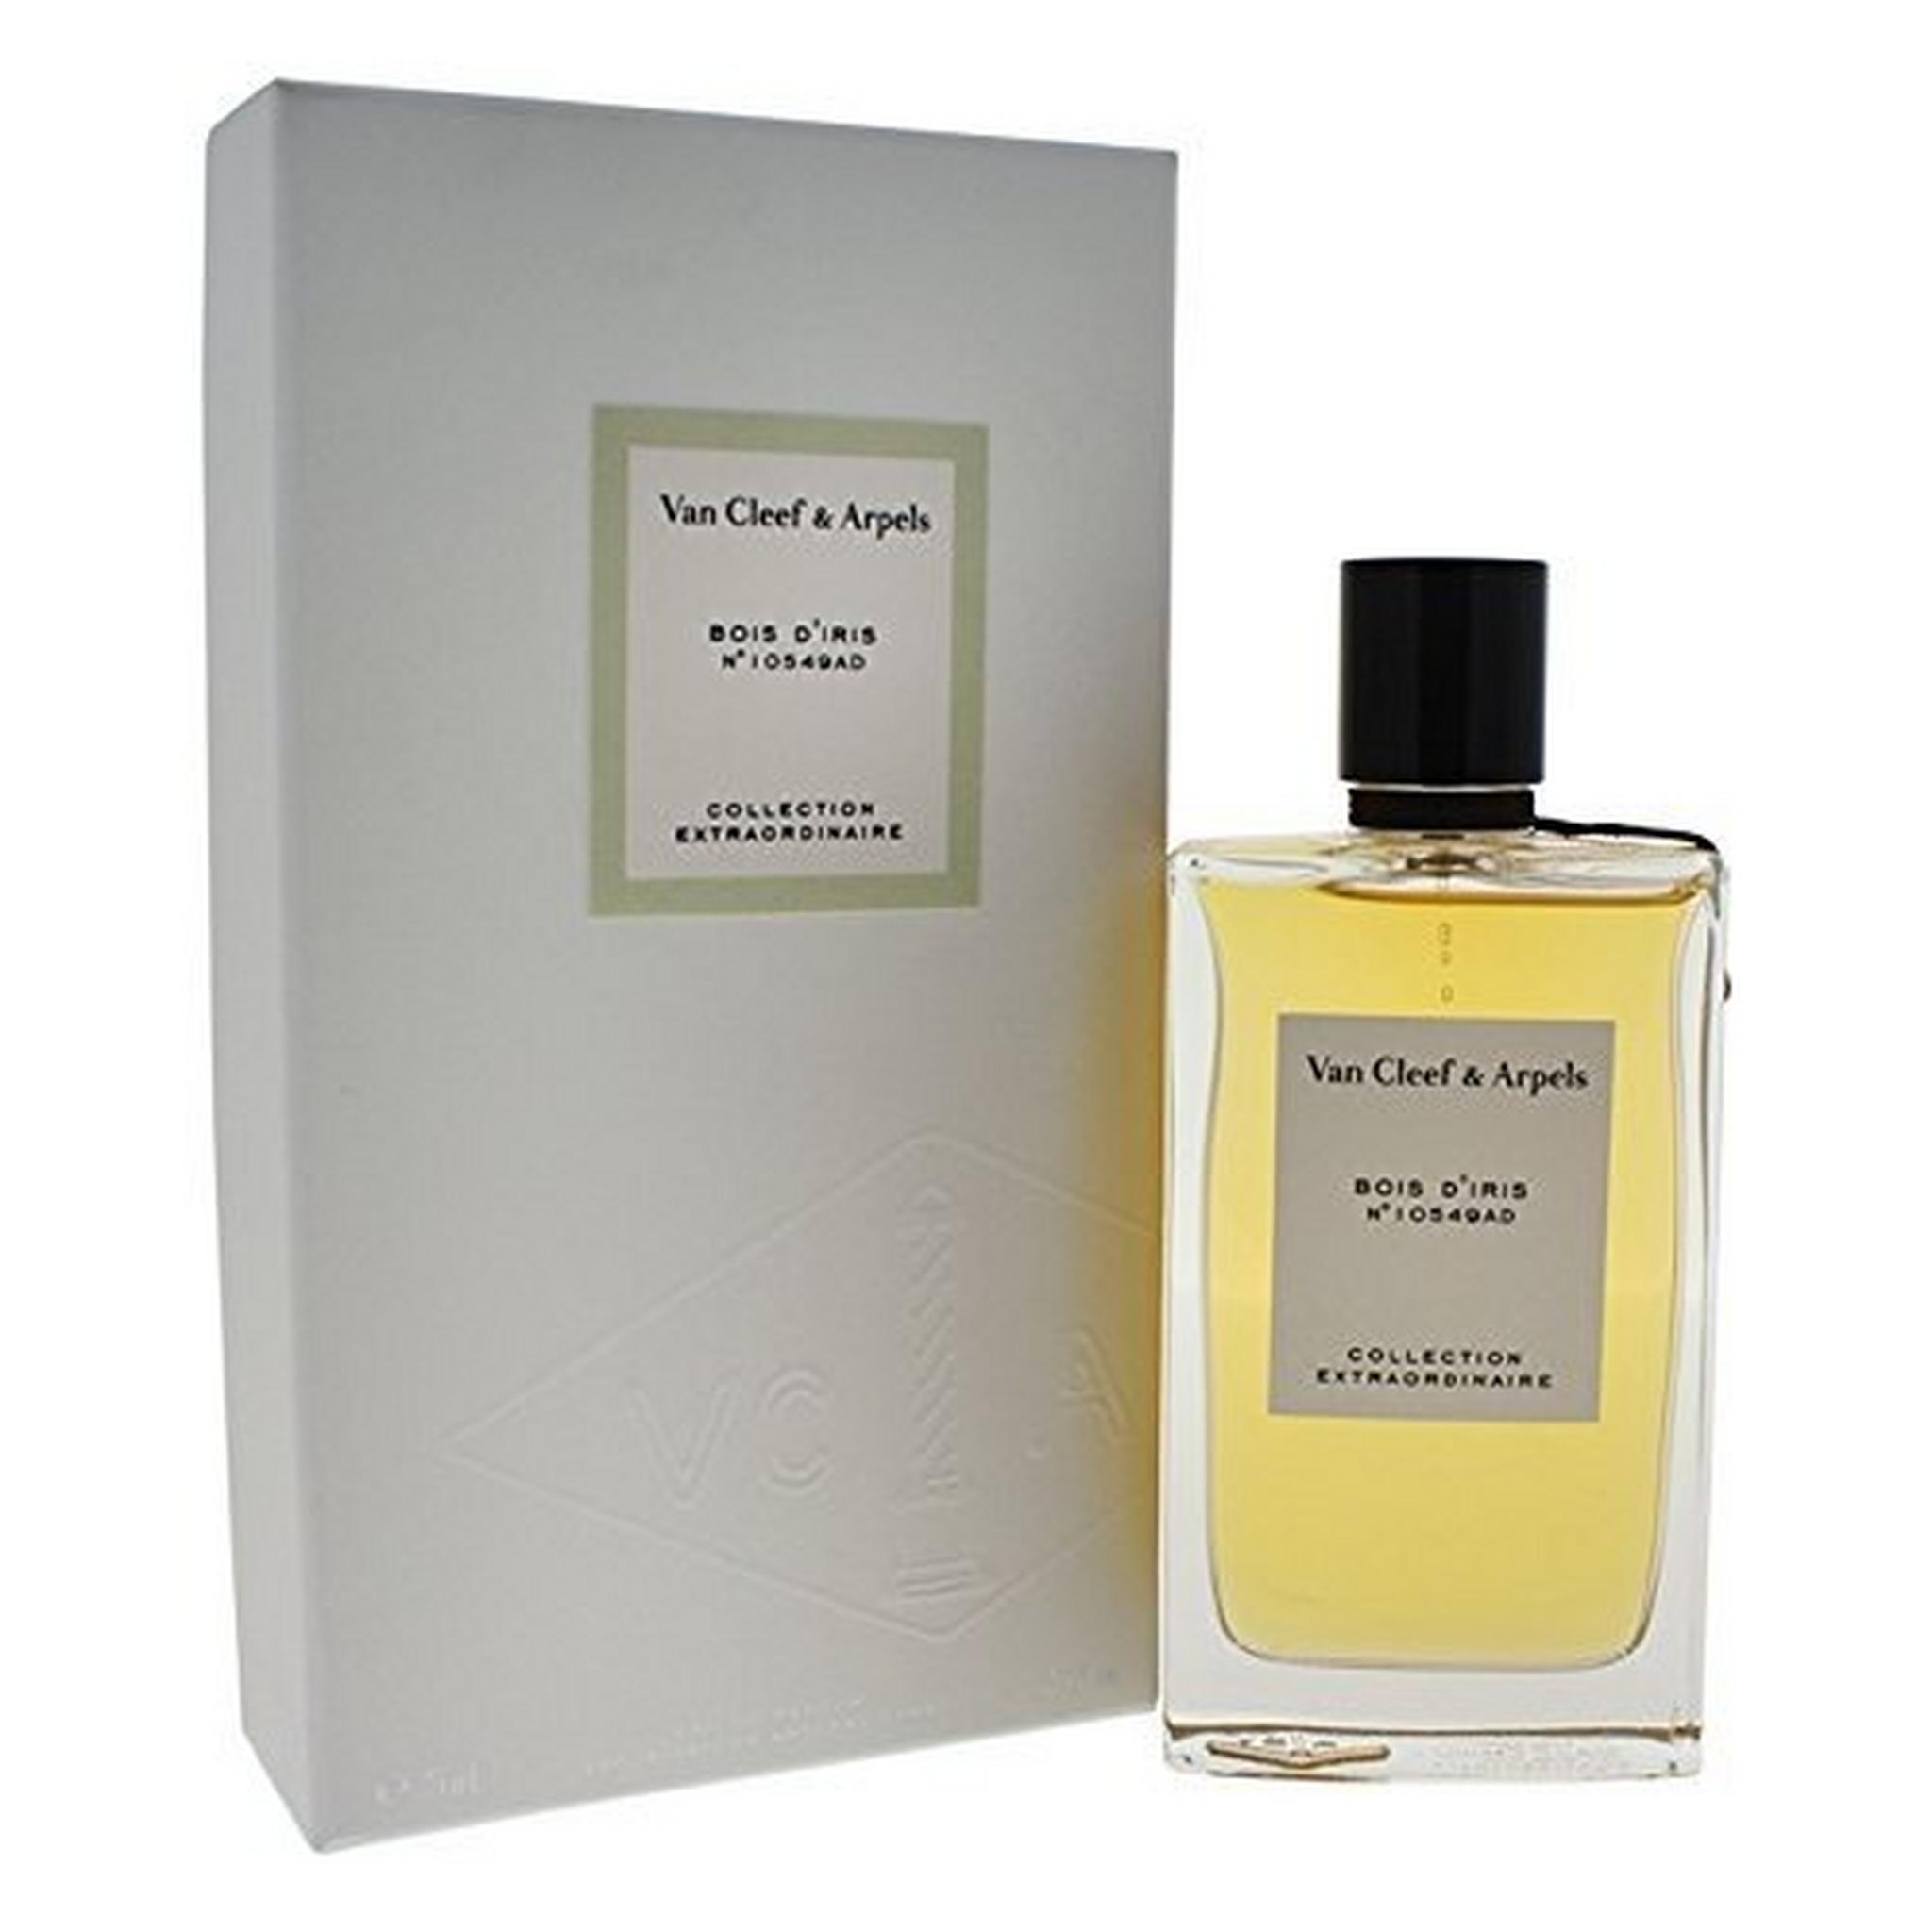 Van Cleef & Arpels Bois Diris for Unisex Eau De Parfum 75ml